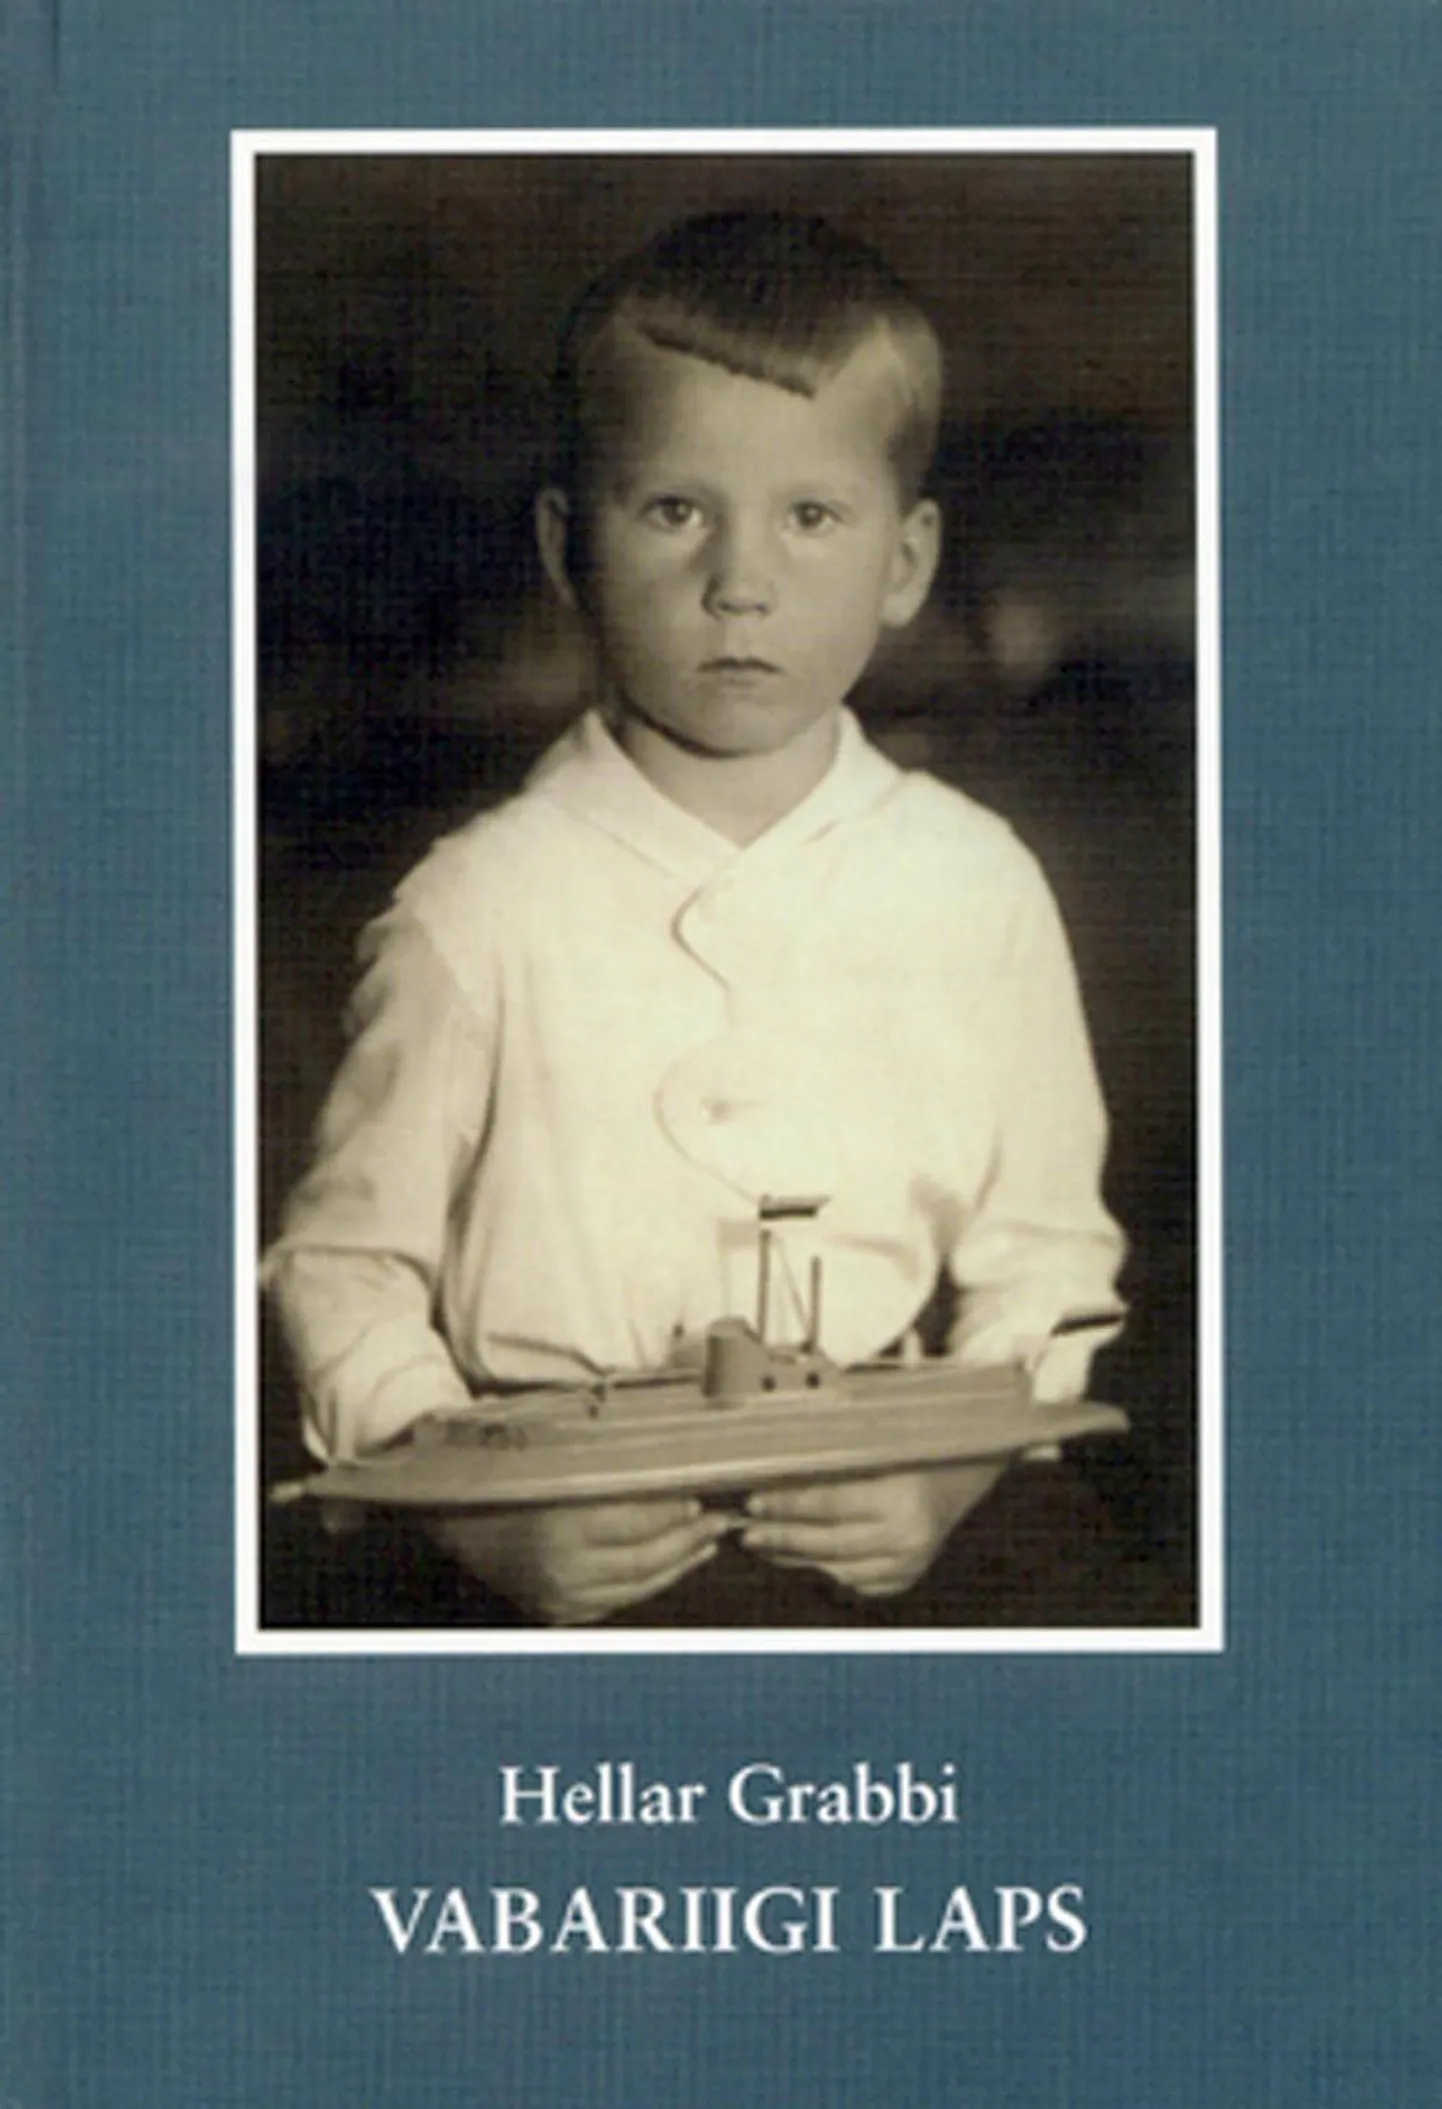 Hellar Grabbi raamatu "Vabariigi laps" esikaas.